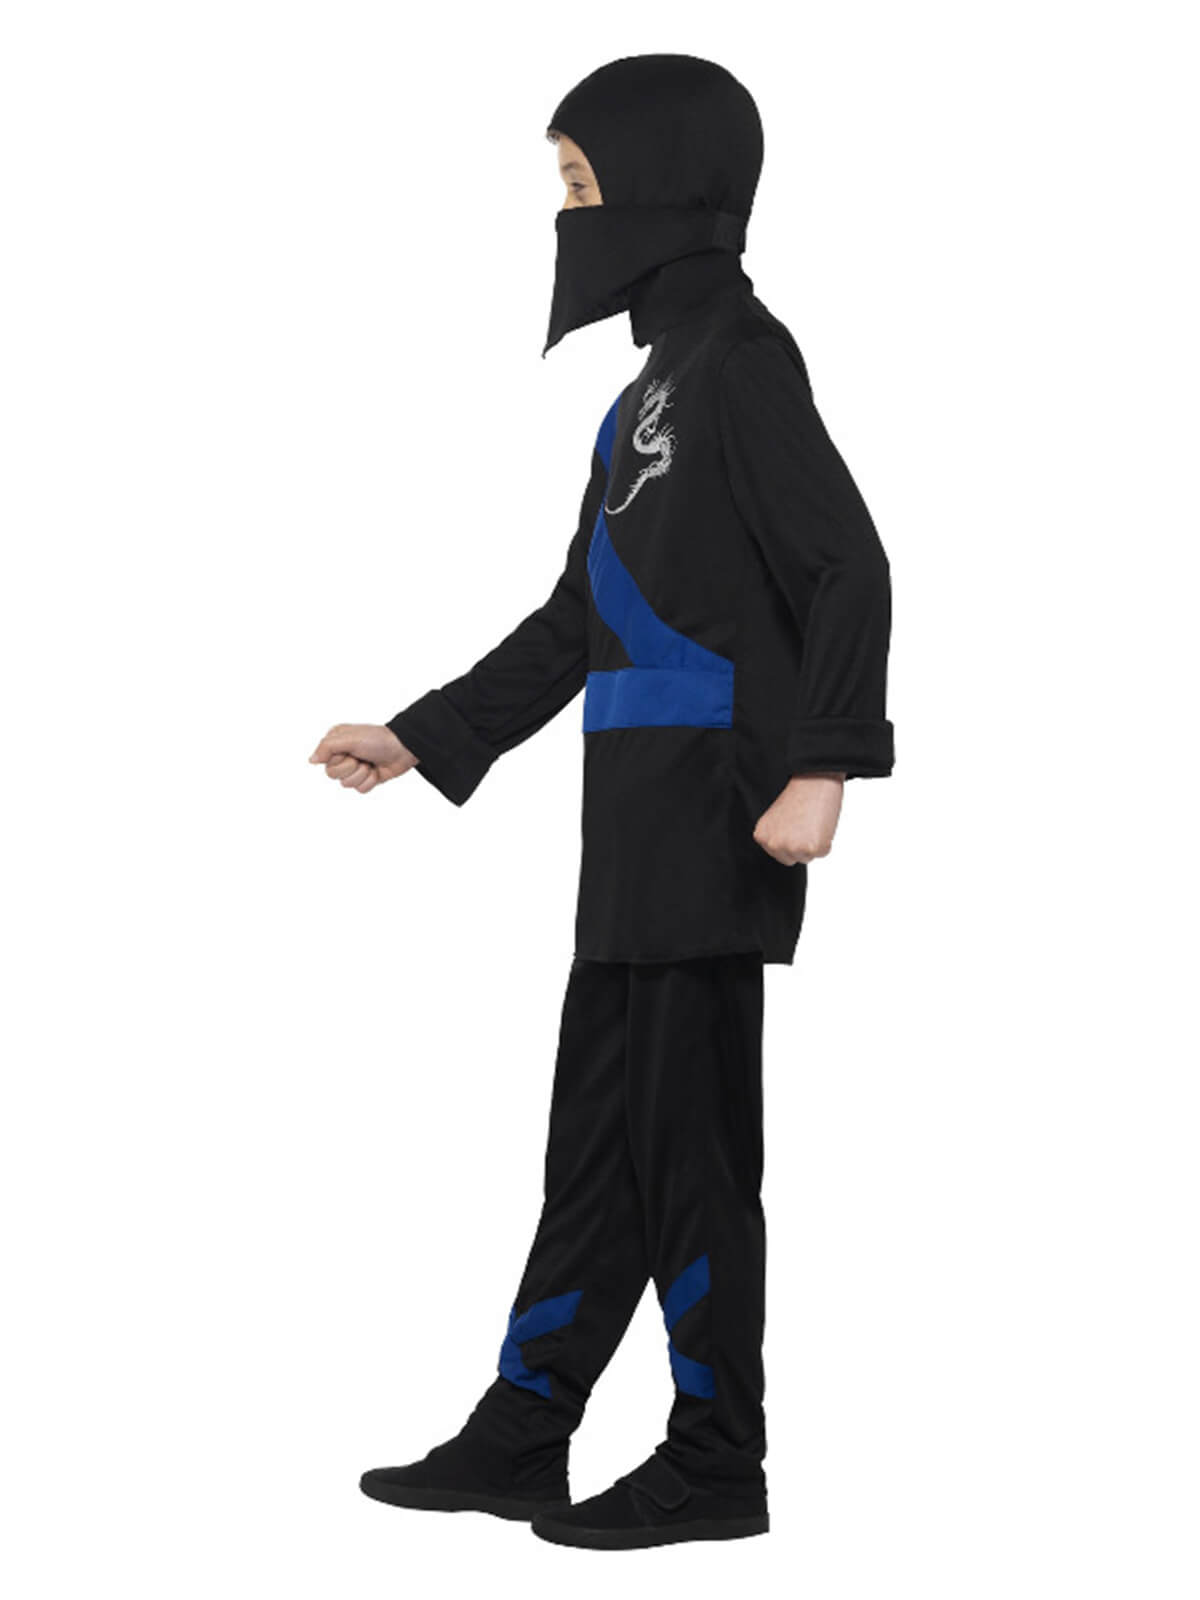 Ninja Assassin Halloween Costume